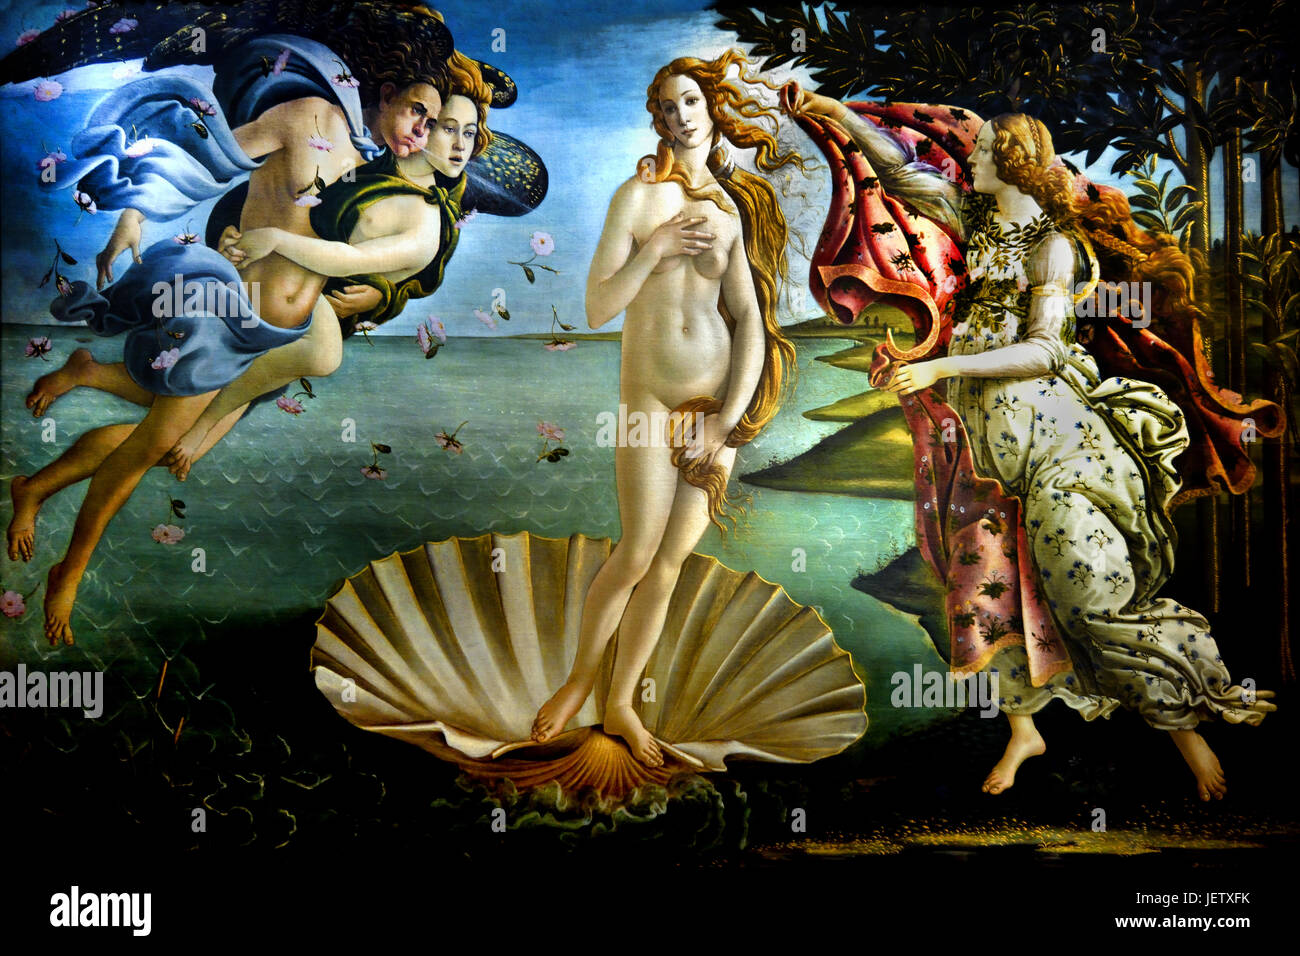 La Naissance de Vénus de Sandro Botticelli 1485 ( Alessandro di Mariano Filipepi ) Florence 1445-1510 peintre italien du début de la renaissance de l'école florentine. Banque D'Images